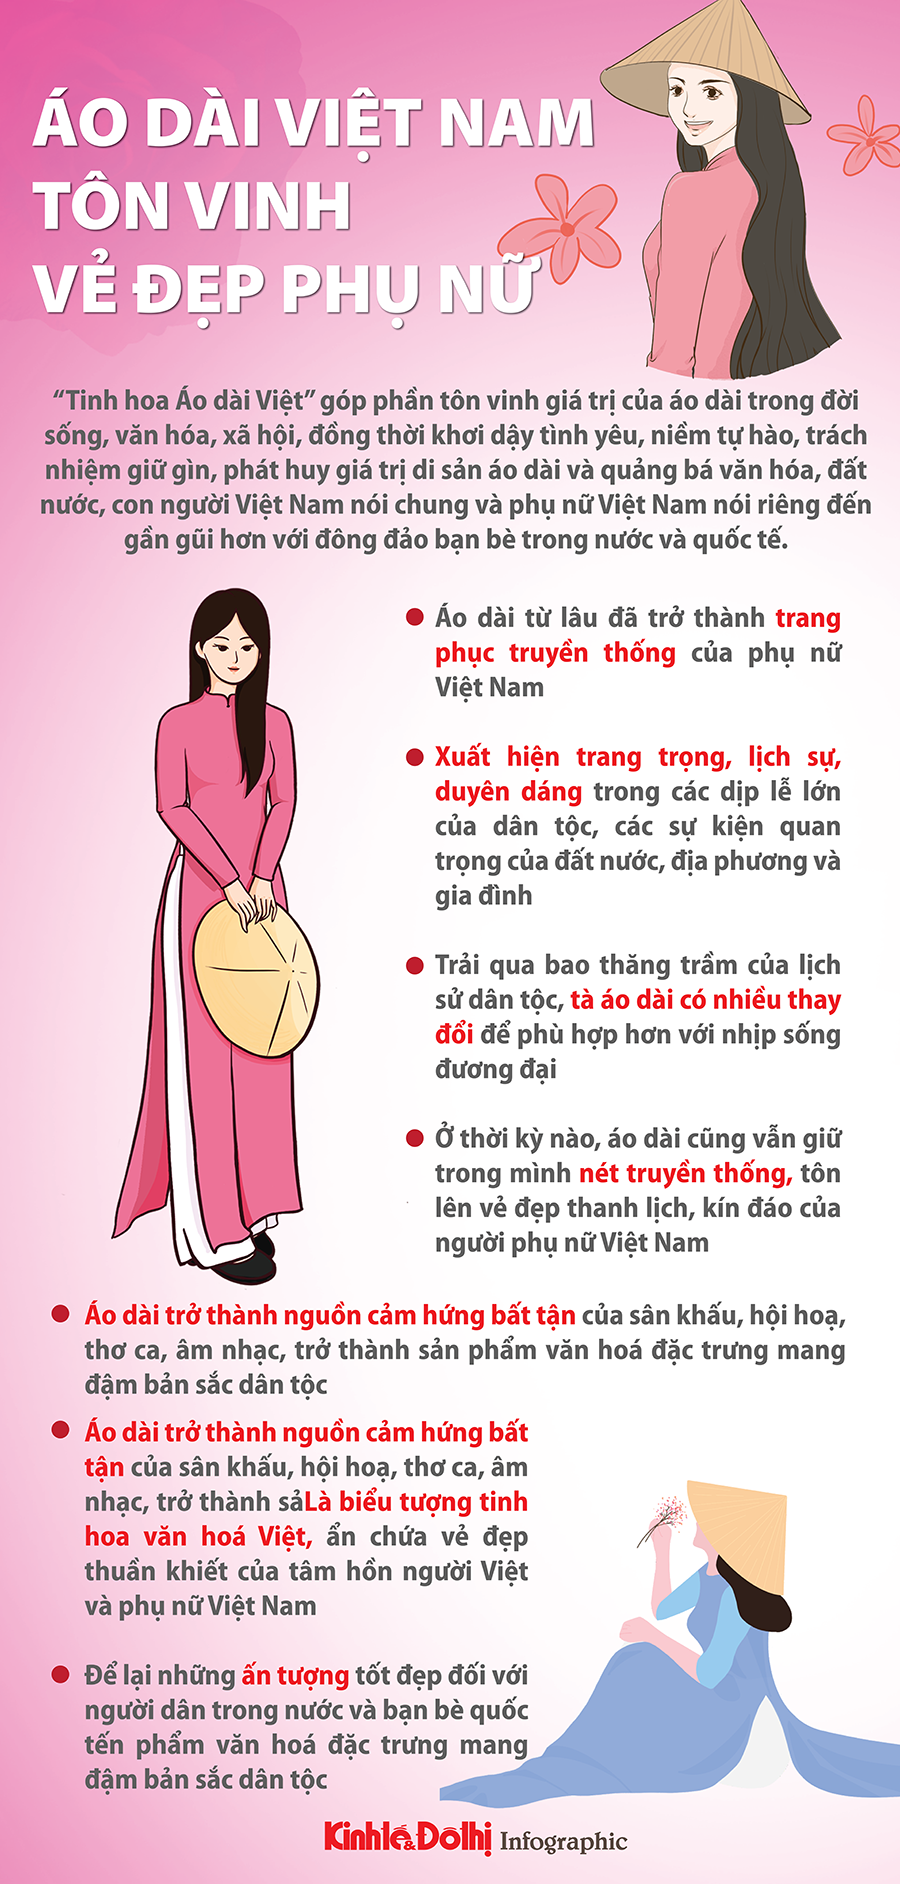 Tôn vinh giá trị áo dài và vẻ đẹp của phụ nữ Việt Nam - Ảnh 1